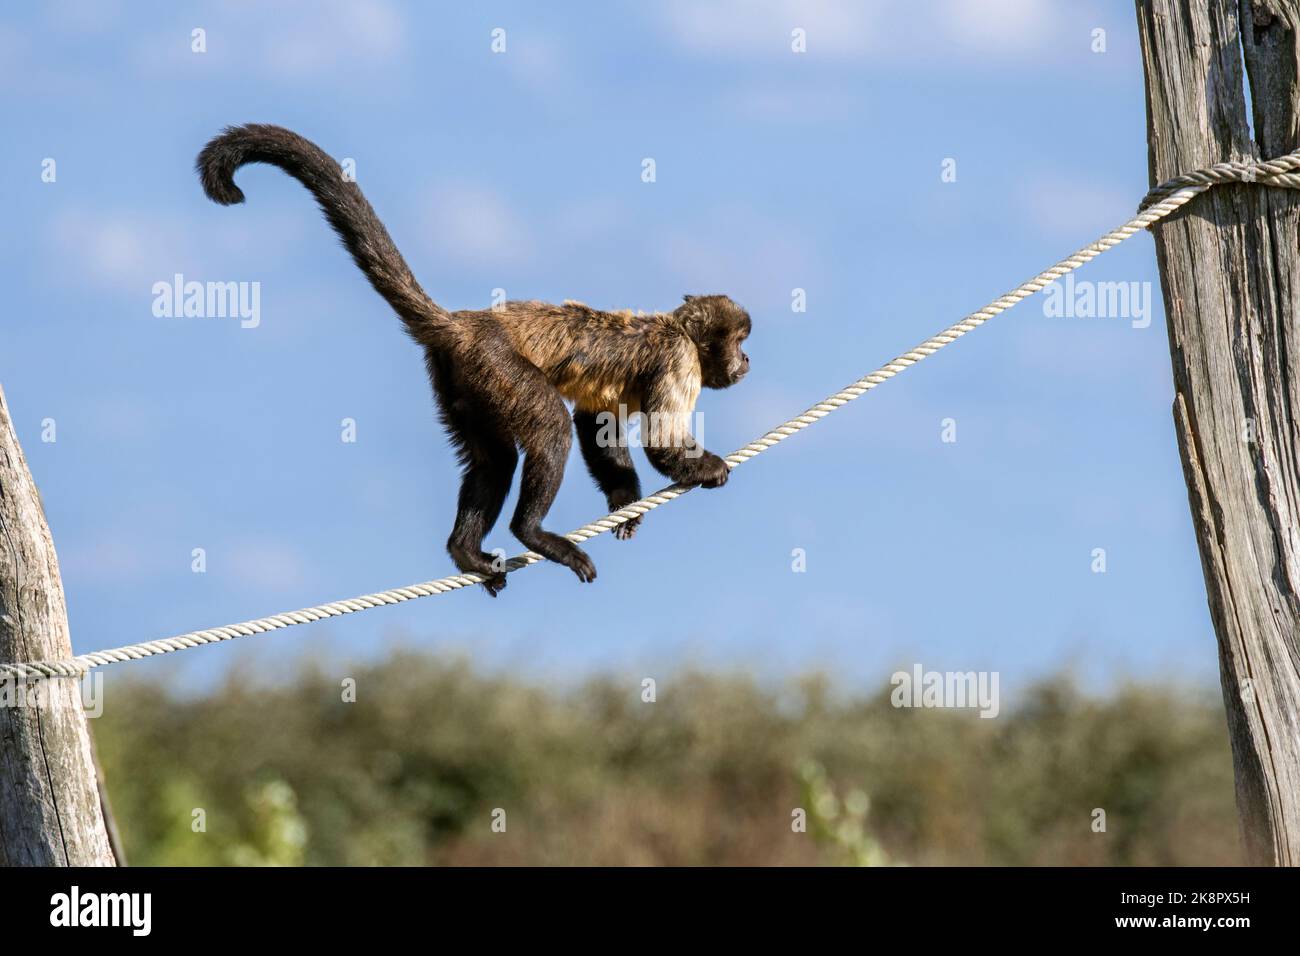 Capucins à ventre doré / capucins à poitrine jaune / capucins à tête de chamois (Sapajus xanthosternos), équilibre de singe sur corde dans le zoo / jardin zoologique Banque D'Images